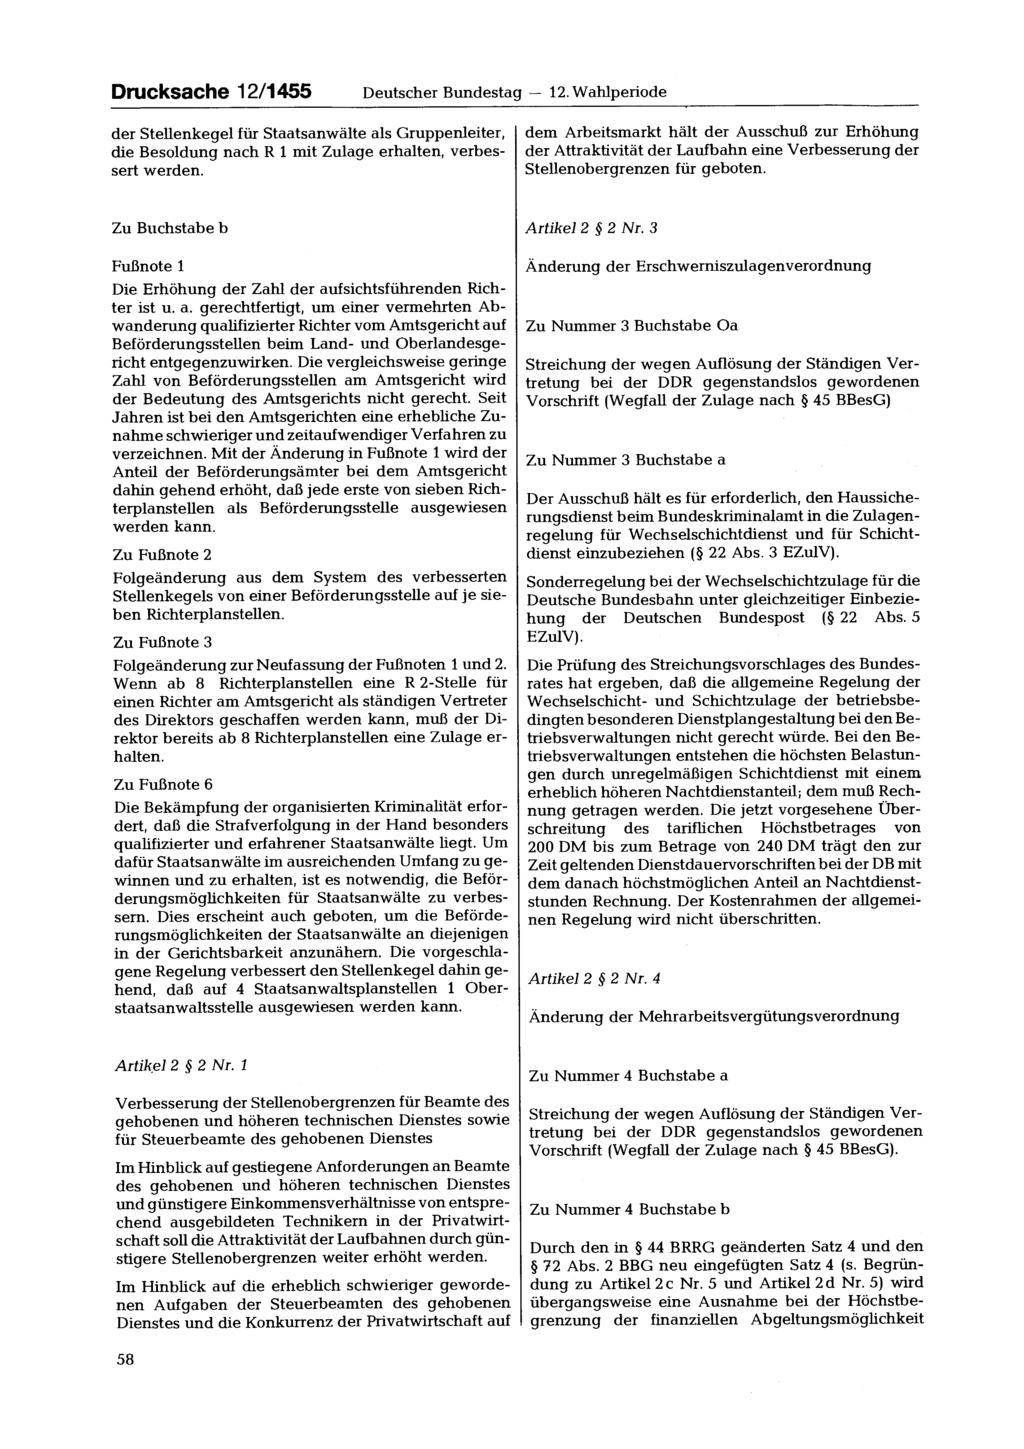 Drucksache 12/1455 Deutscher Bundestag 12. Wahlperiode der Stellenkegel für Staatsanwälte als Gruppenleiter, die Besoldung nach R 1 mit Zulage erhalten, verbessert werden.